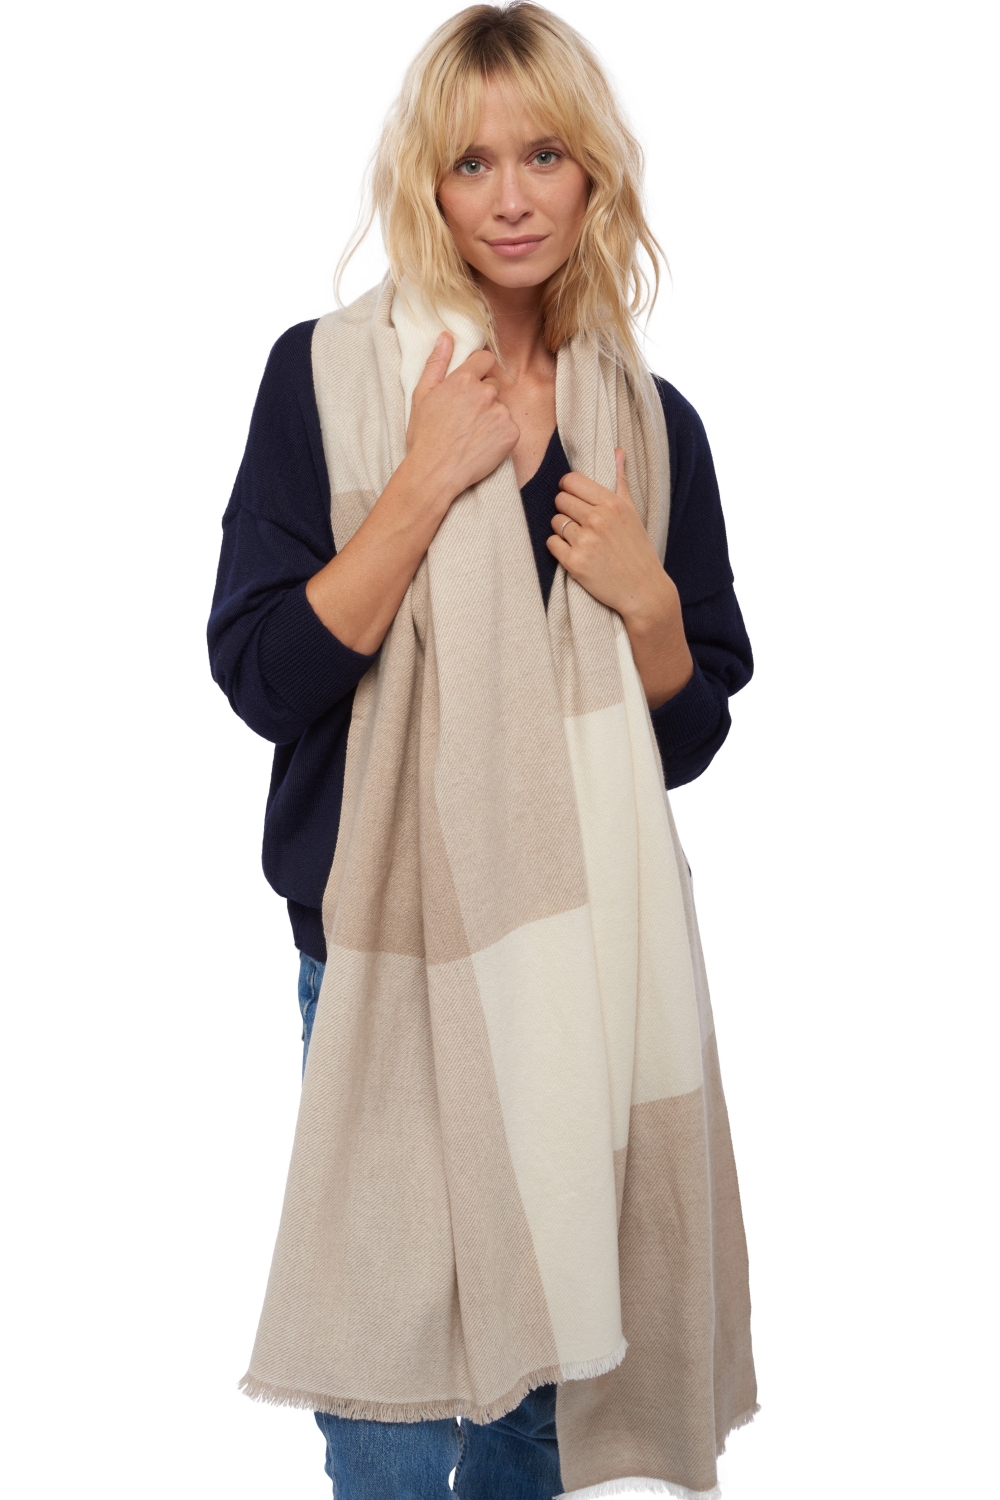 Cashmere cashmere donna sciarpe foulard verona natural ecru natural stone 225 x 75 cm